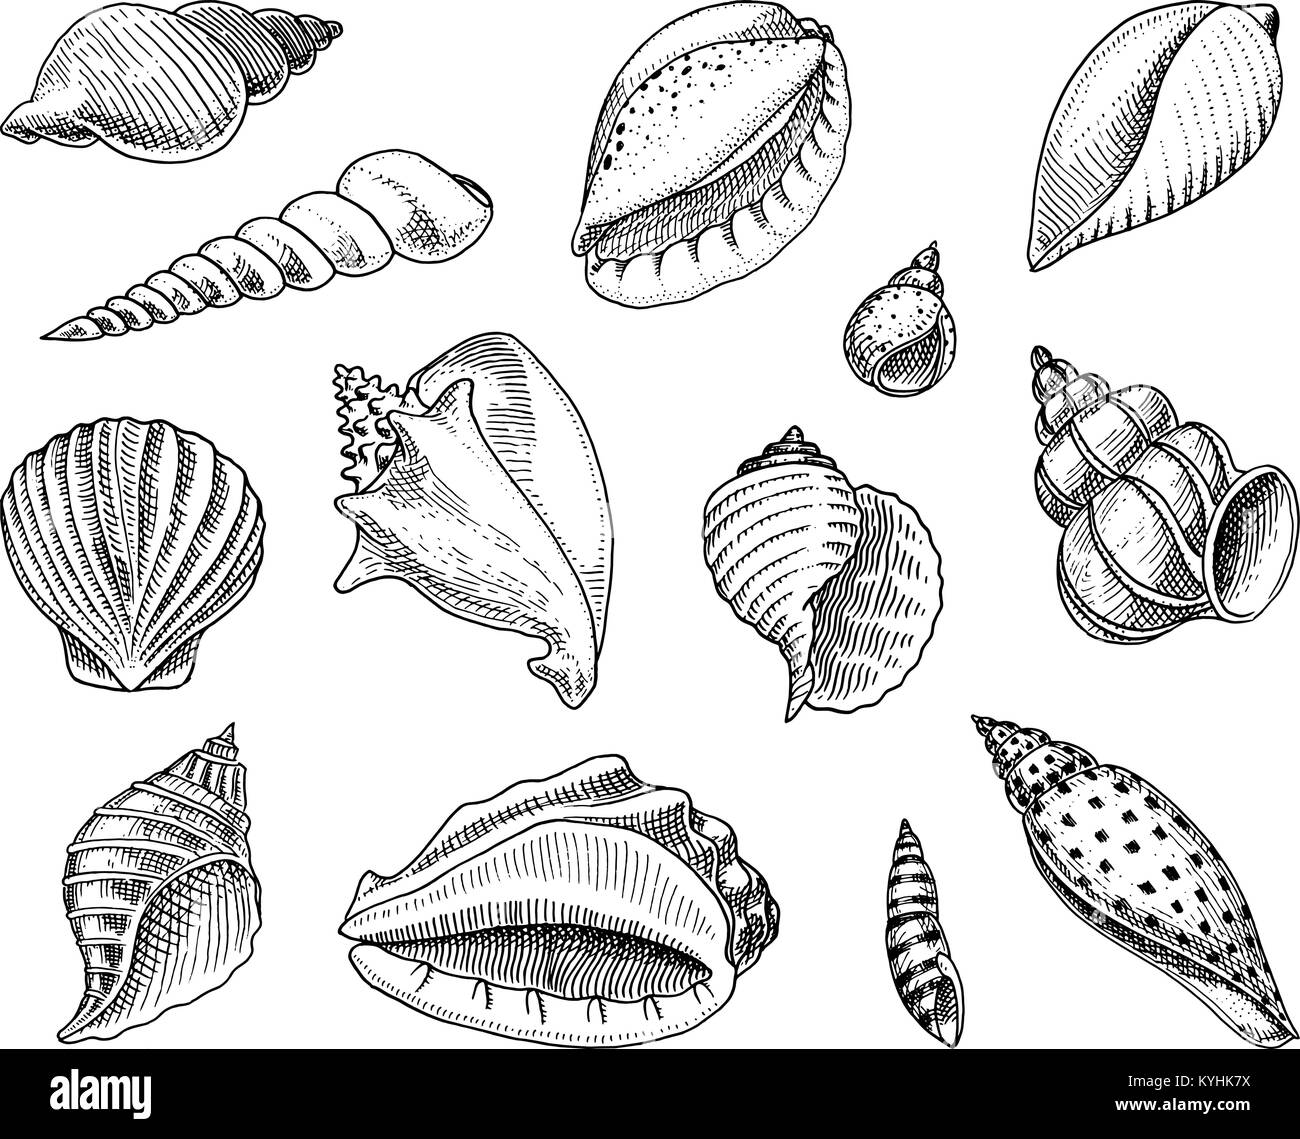 Muscheln oder mollusca unterschiedliche Formen. Meer Kreatur. graviert Hand in alte Skizze gezeichnet, Vintage Style. nautischen oder Marine, Monster oder Essen. Tiere, die in den Ozean. Stock Vektor